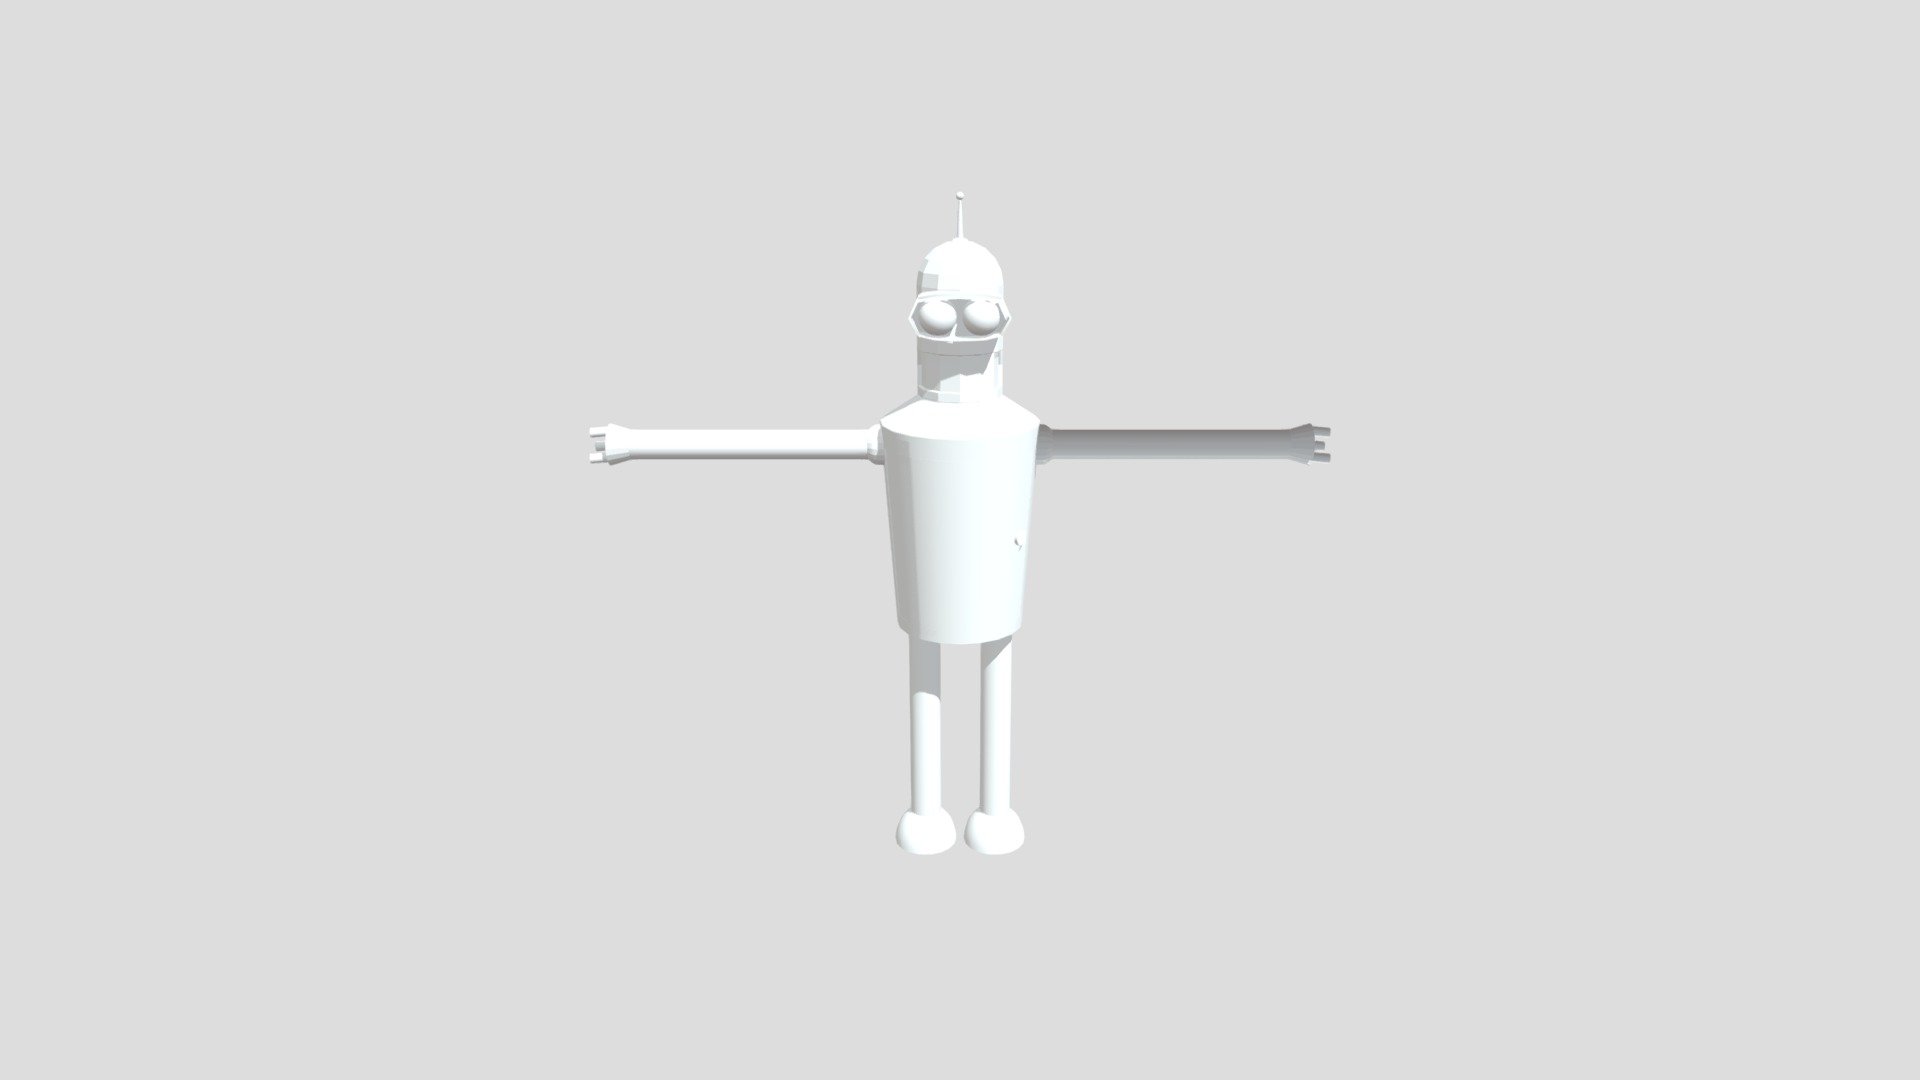 Bender - Download Free 3D model by leonelrueda23 [b79172a] - Sketchfab